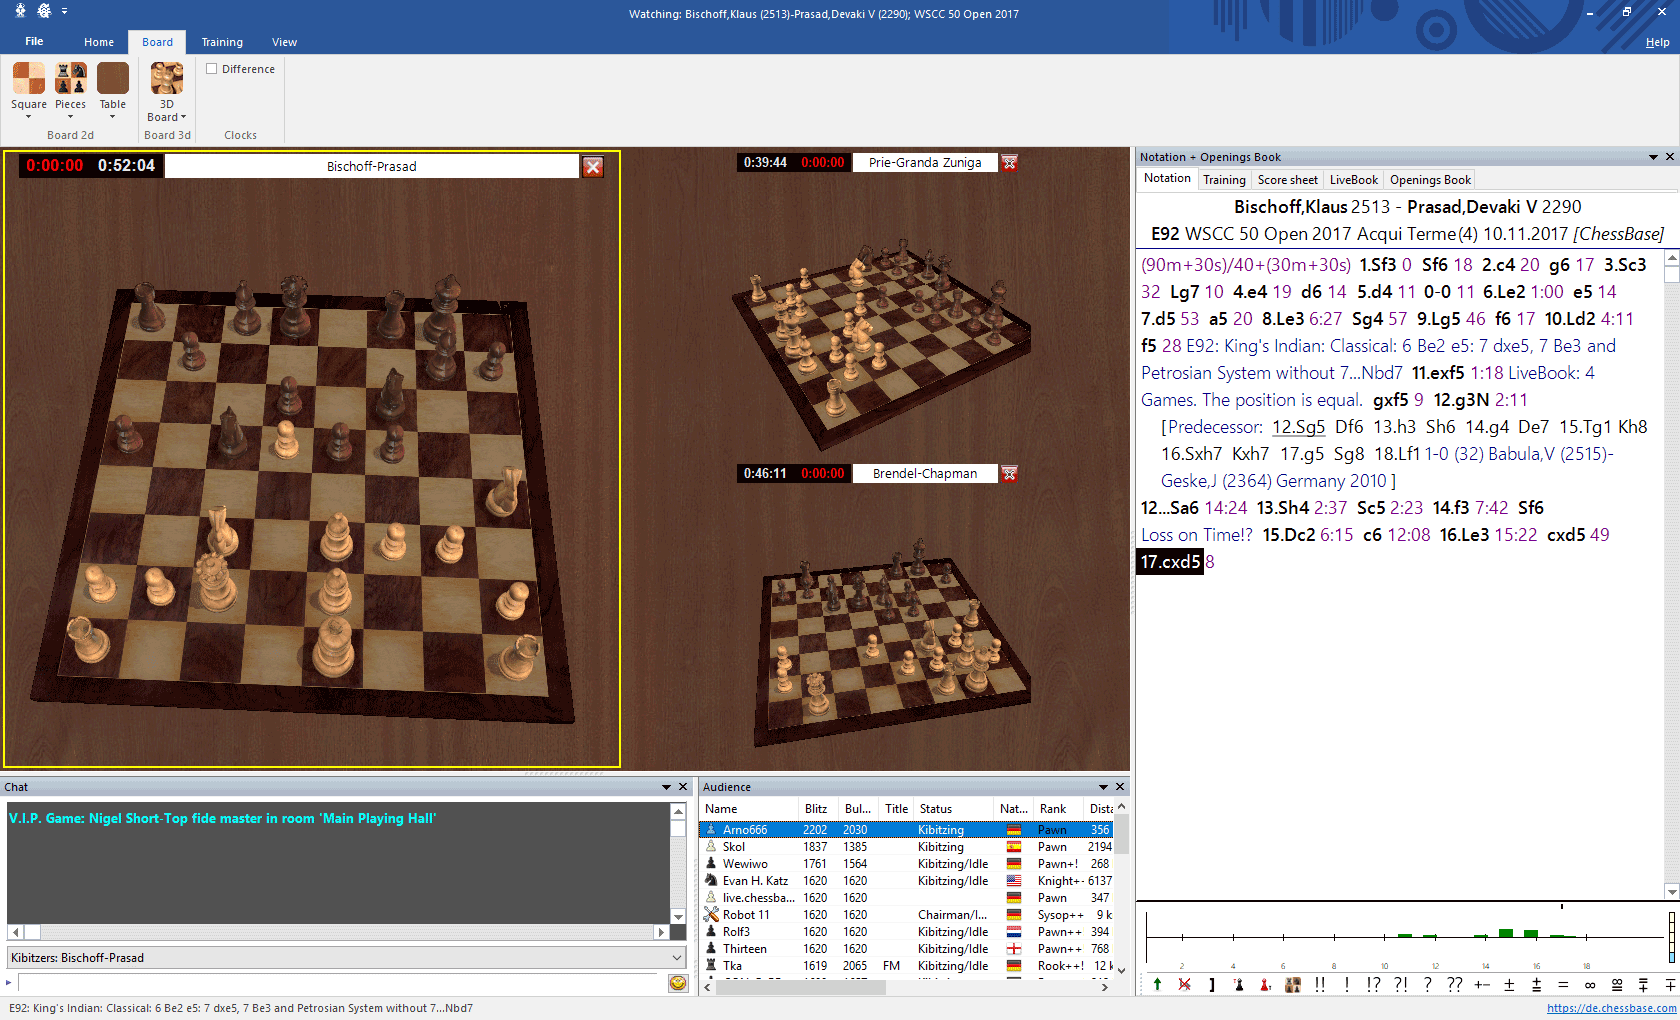 chessbase reader analyze